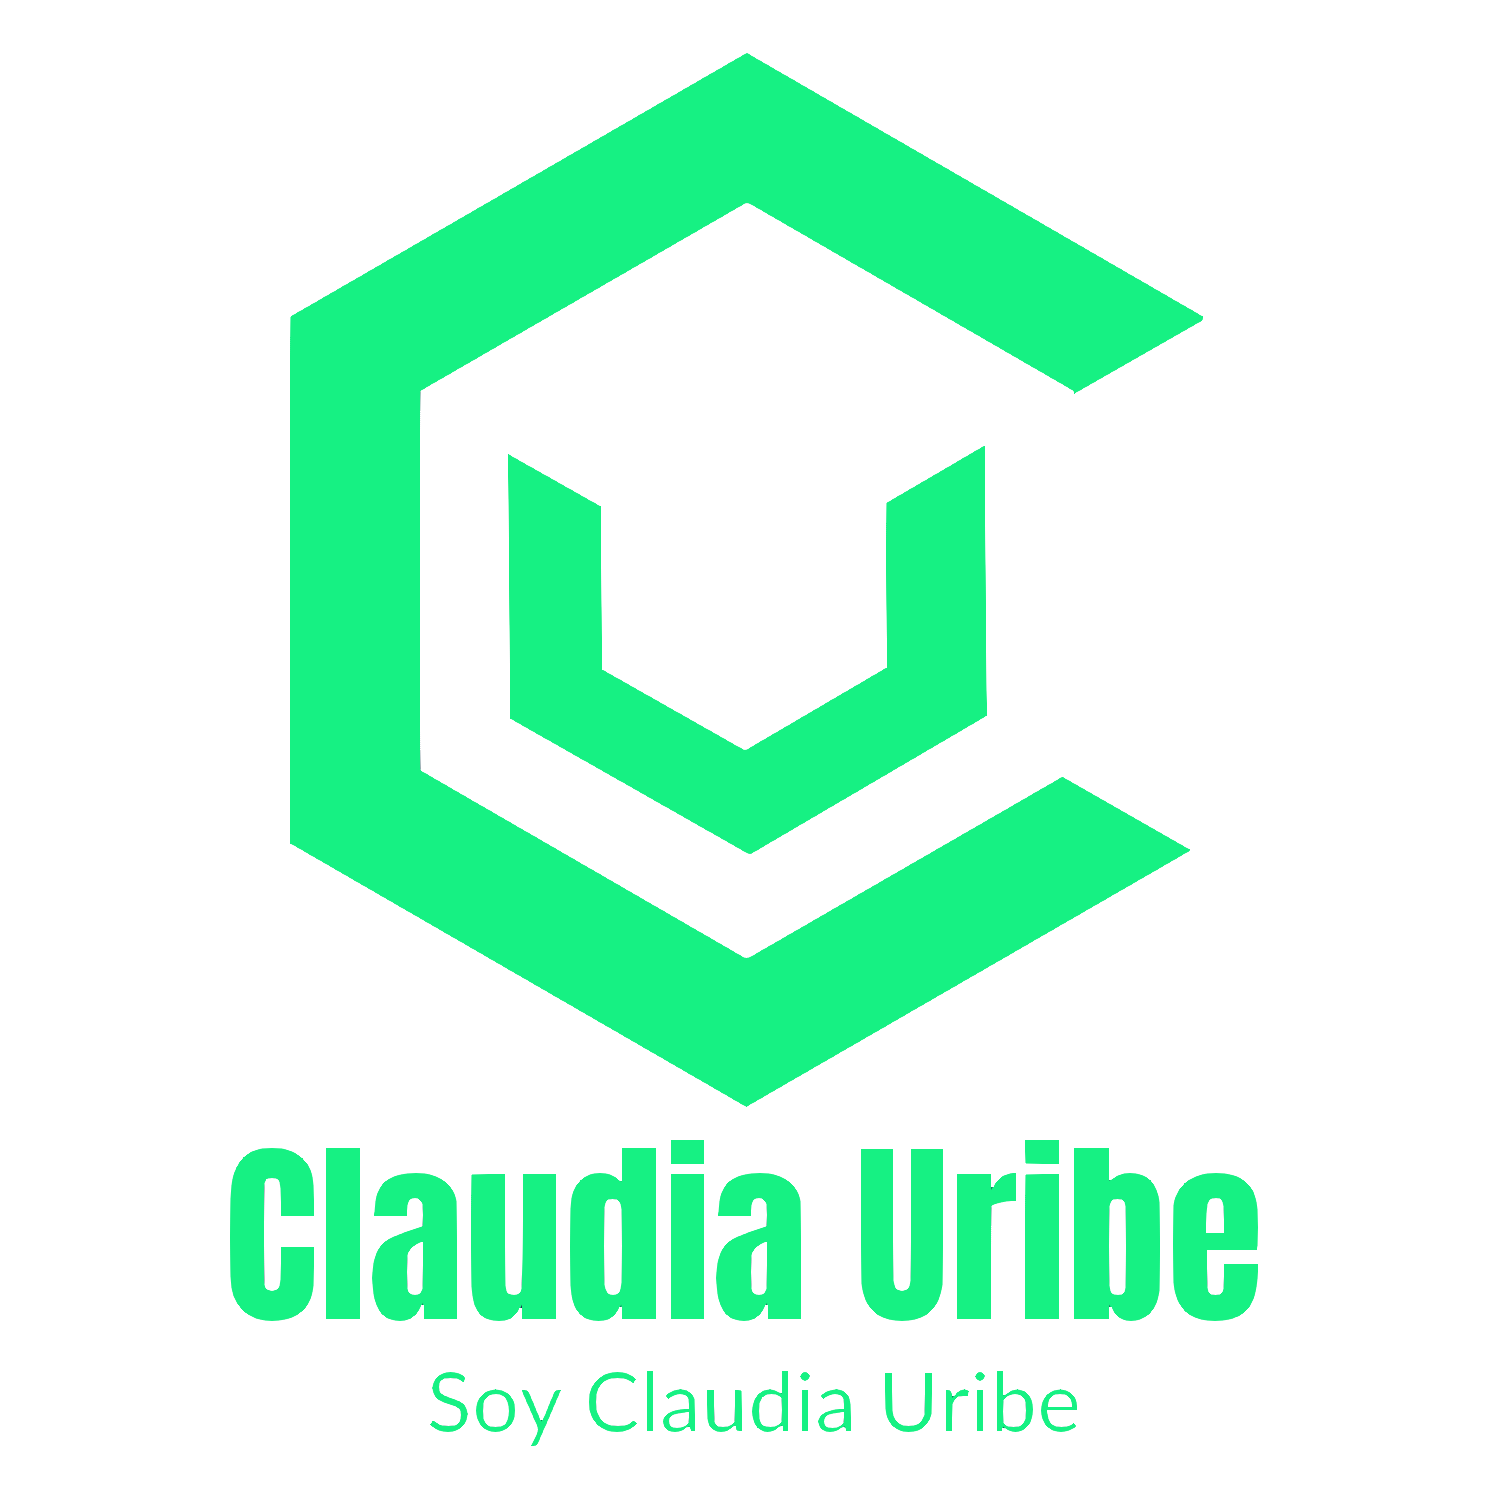 Soy Claudia Uribe